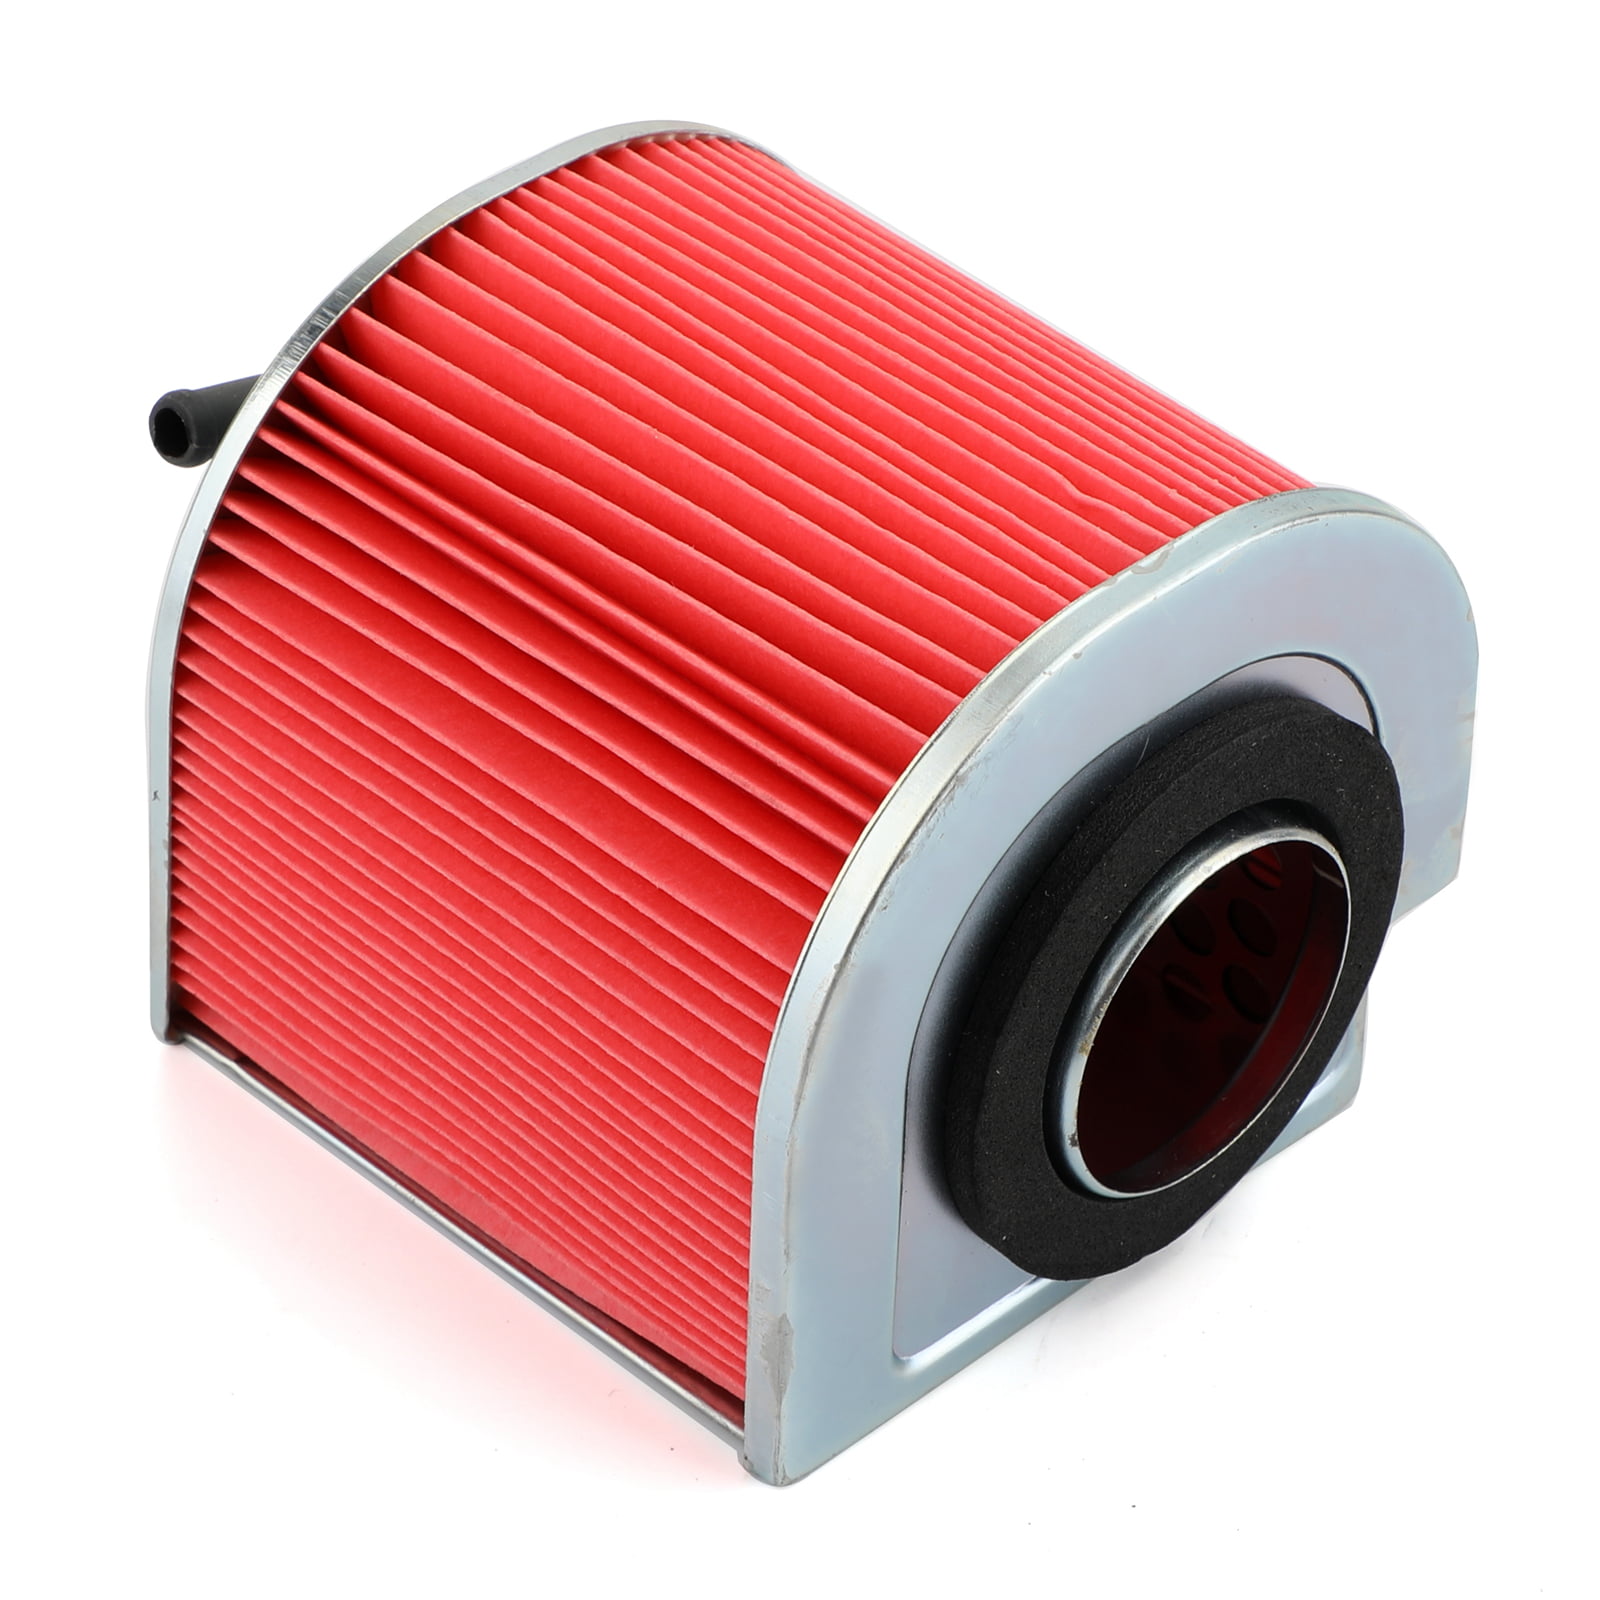 Air Filter for Honda CA125 REBEL #17211-KEB-900 Air Filter